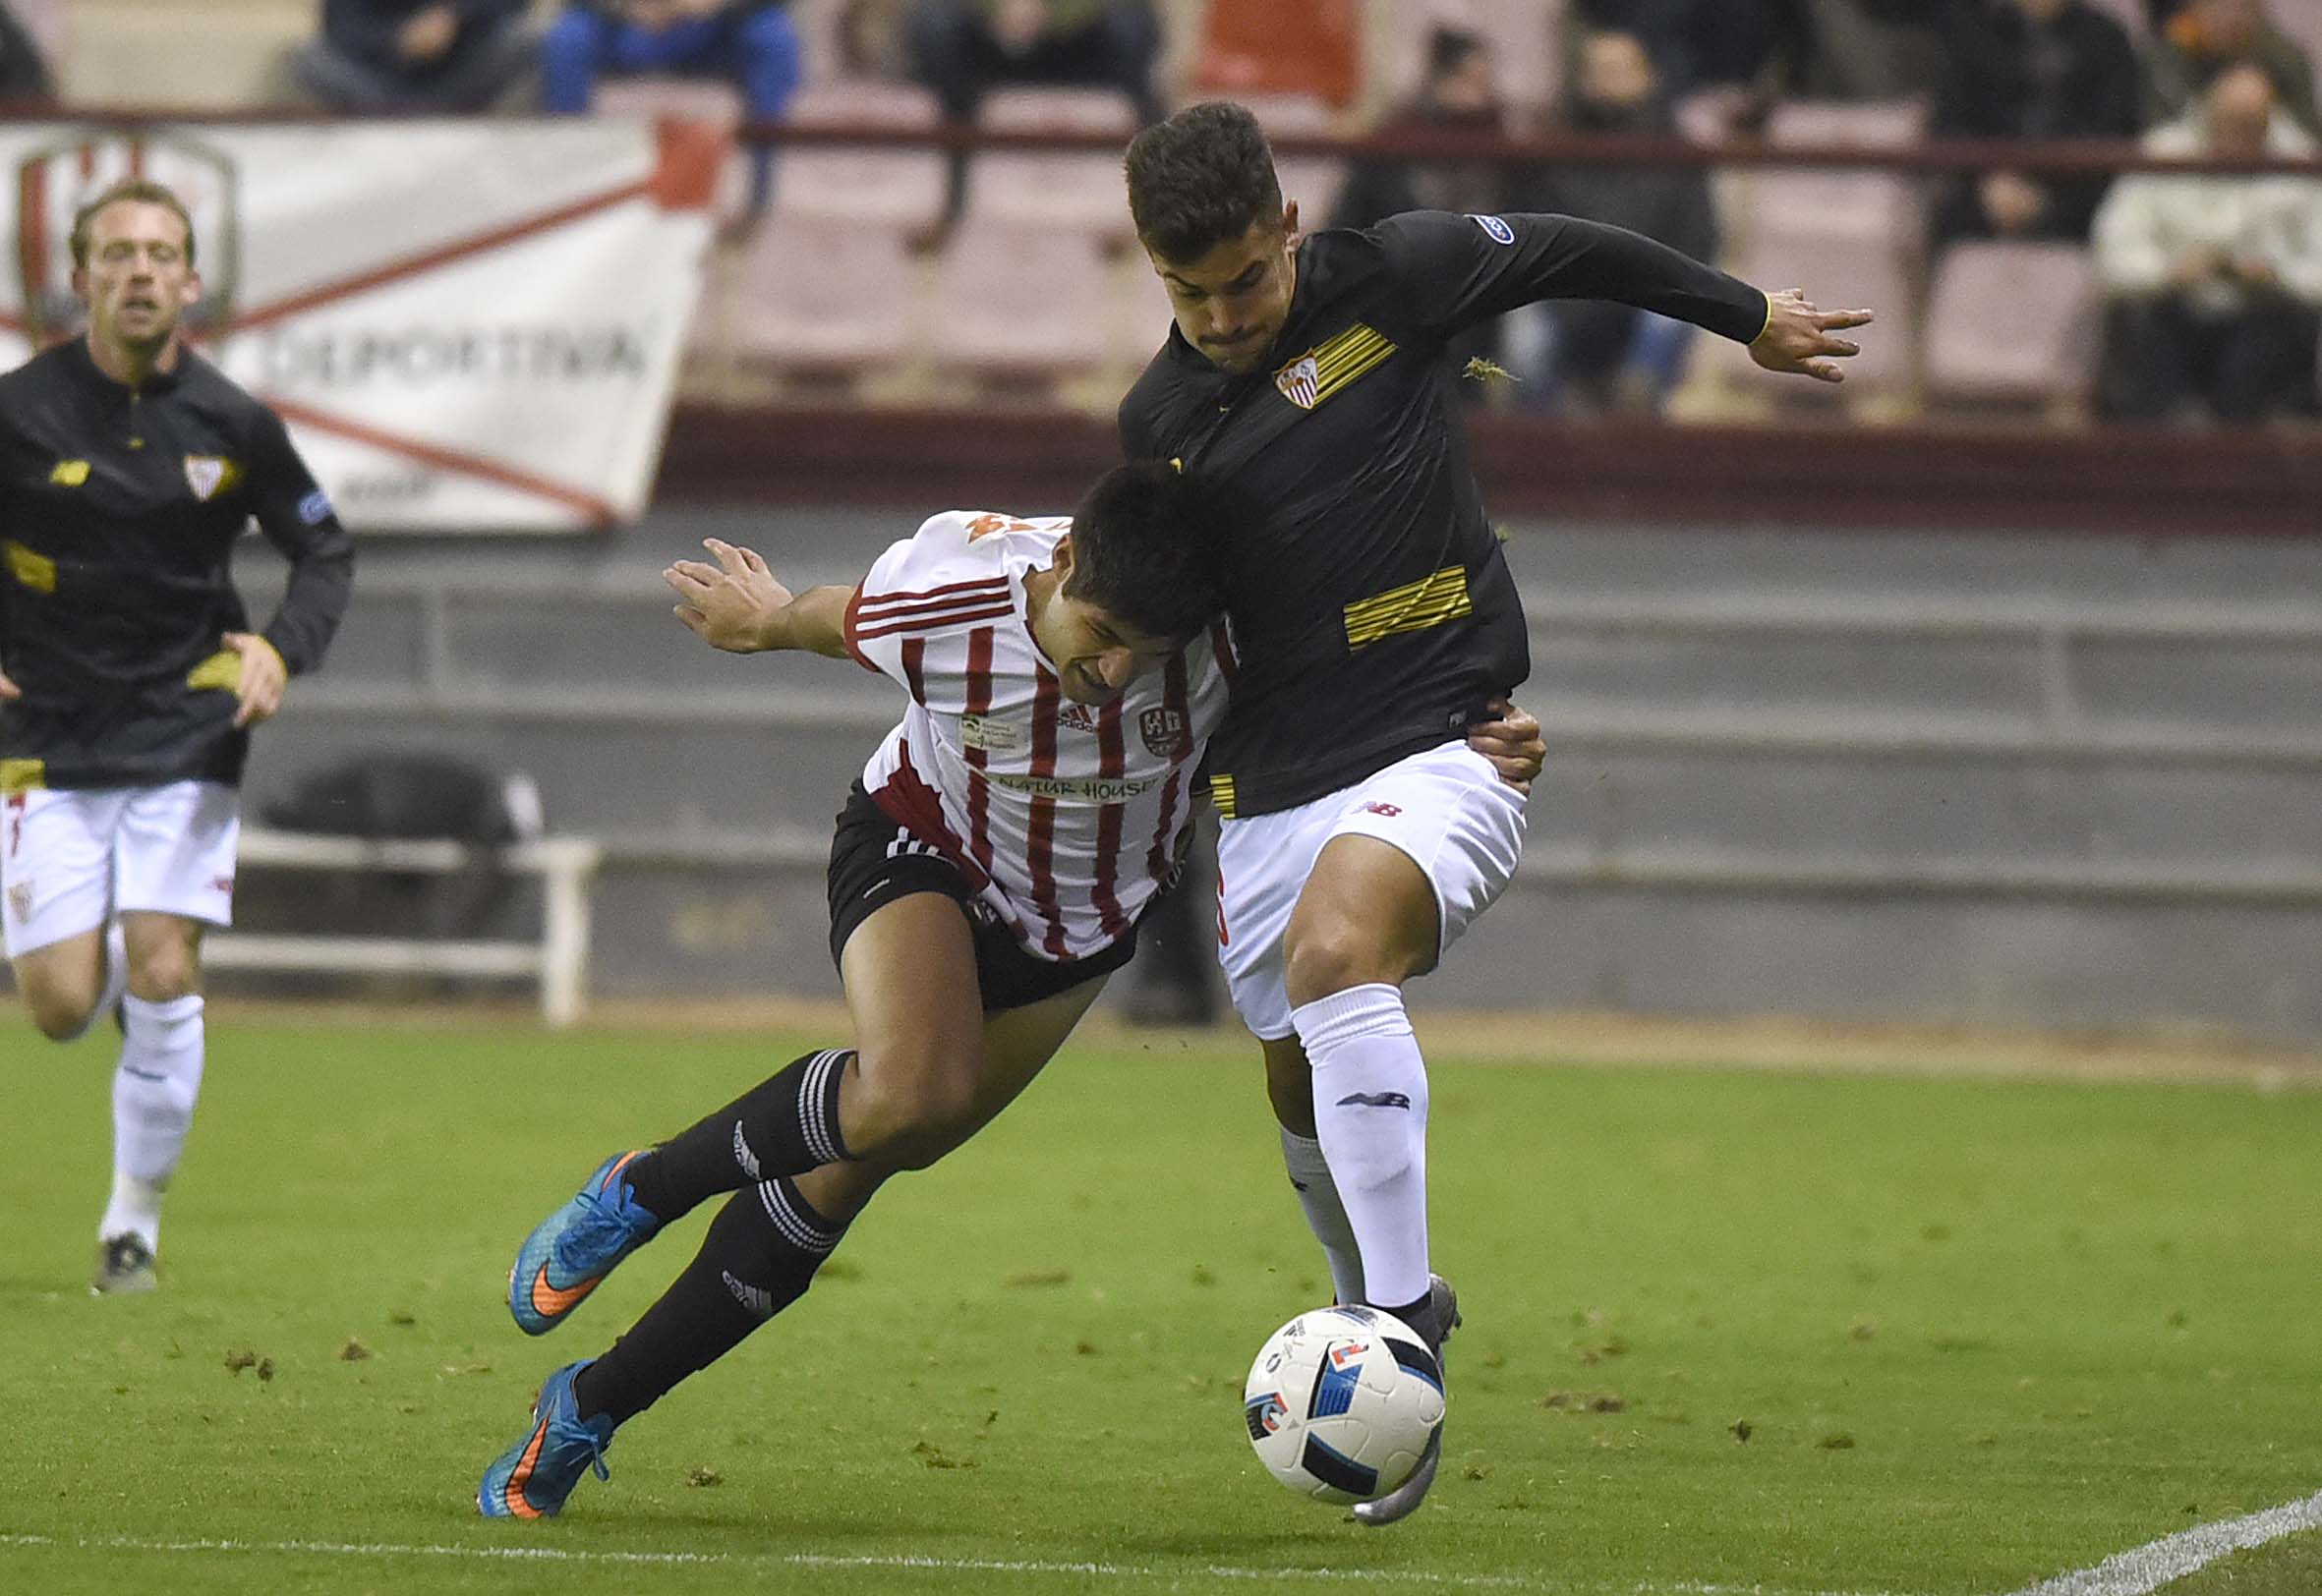 Curro debutó con el primer equipo en partido oficial en Logroño